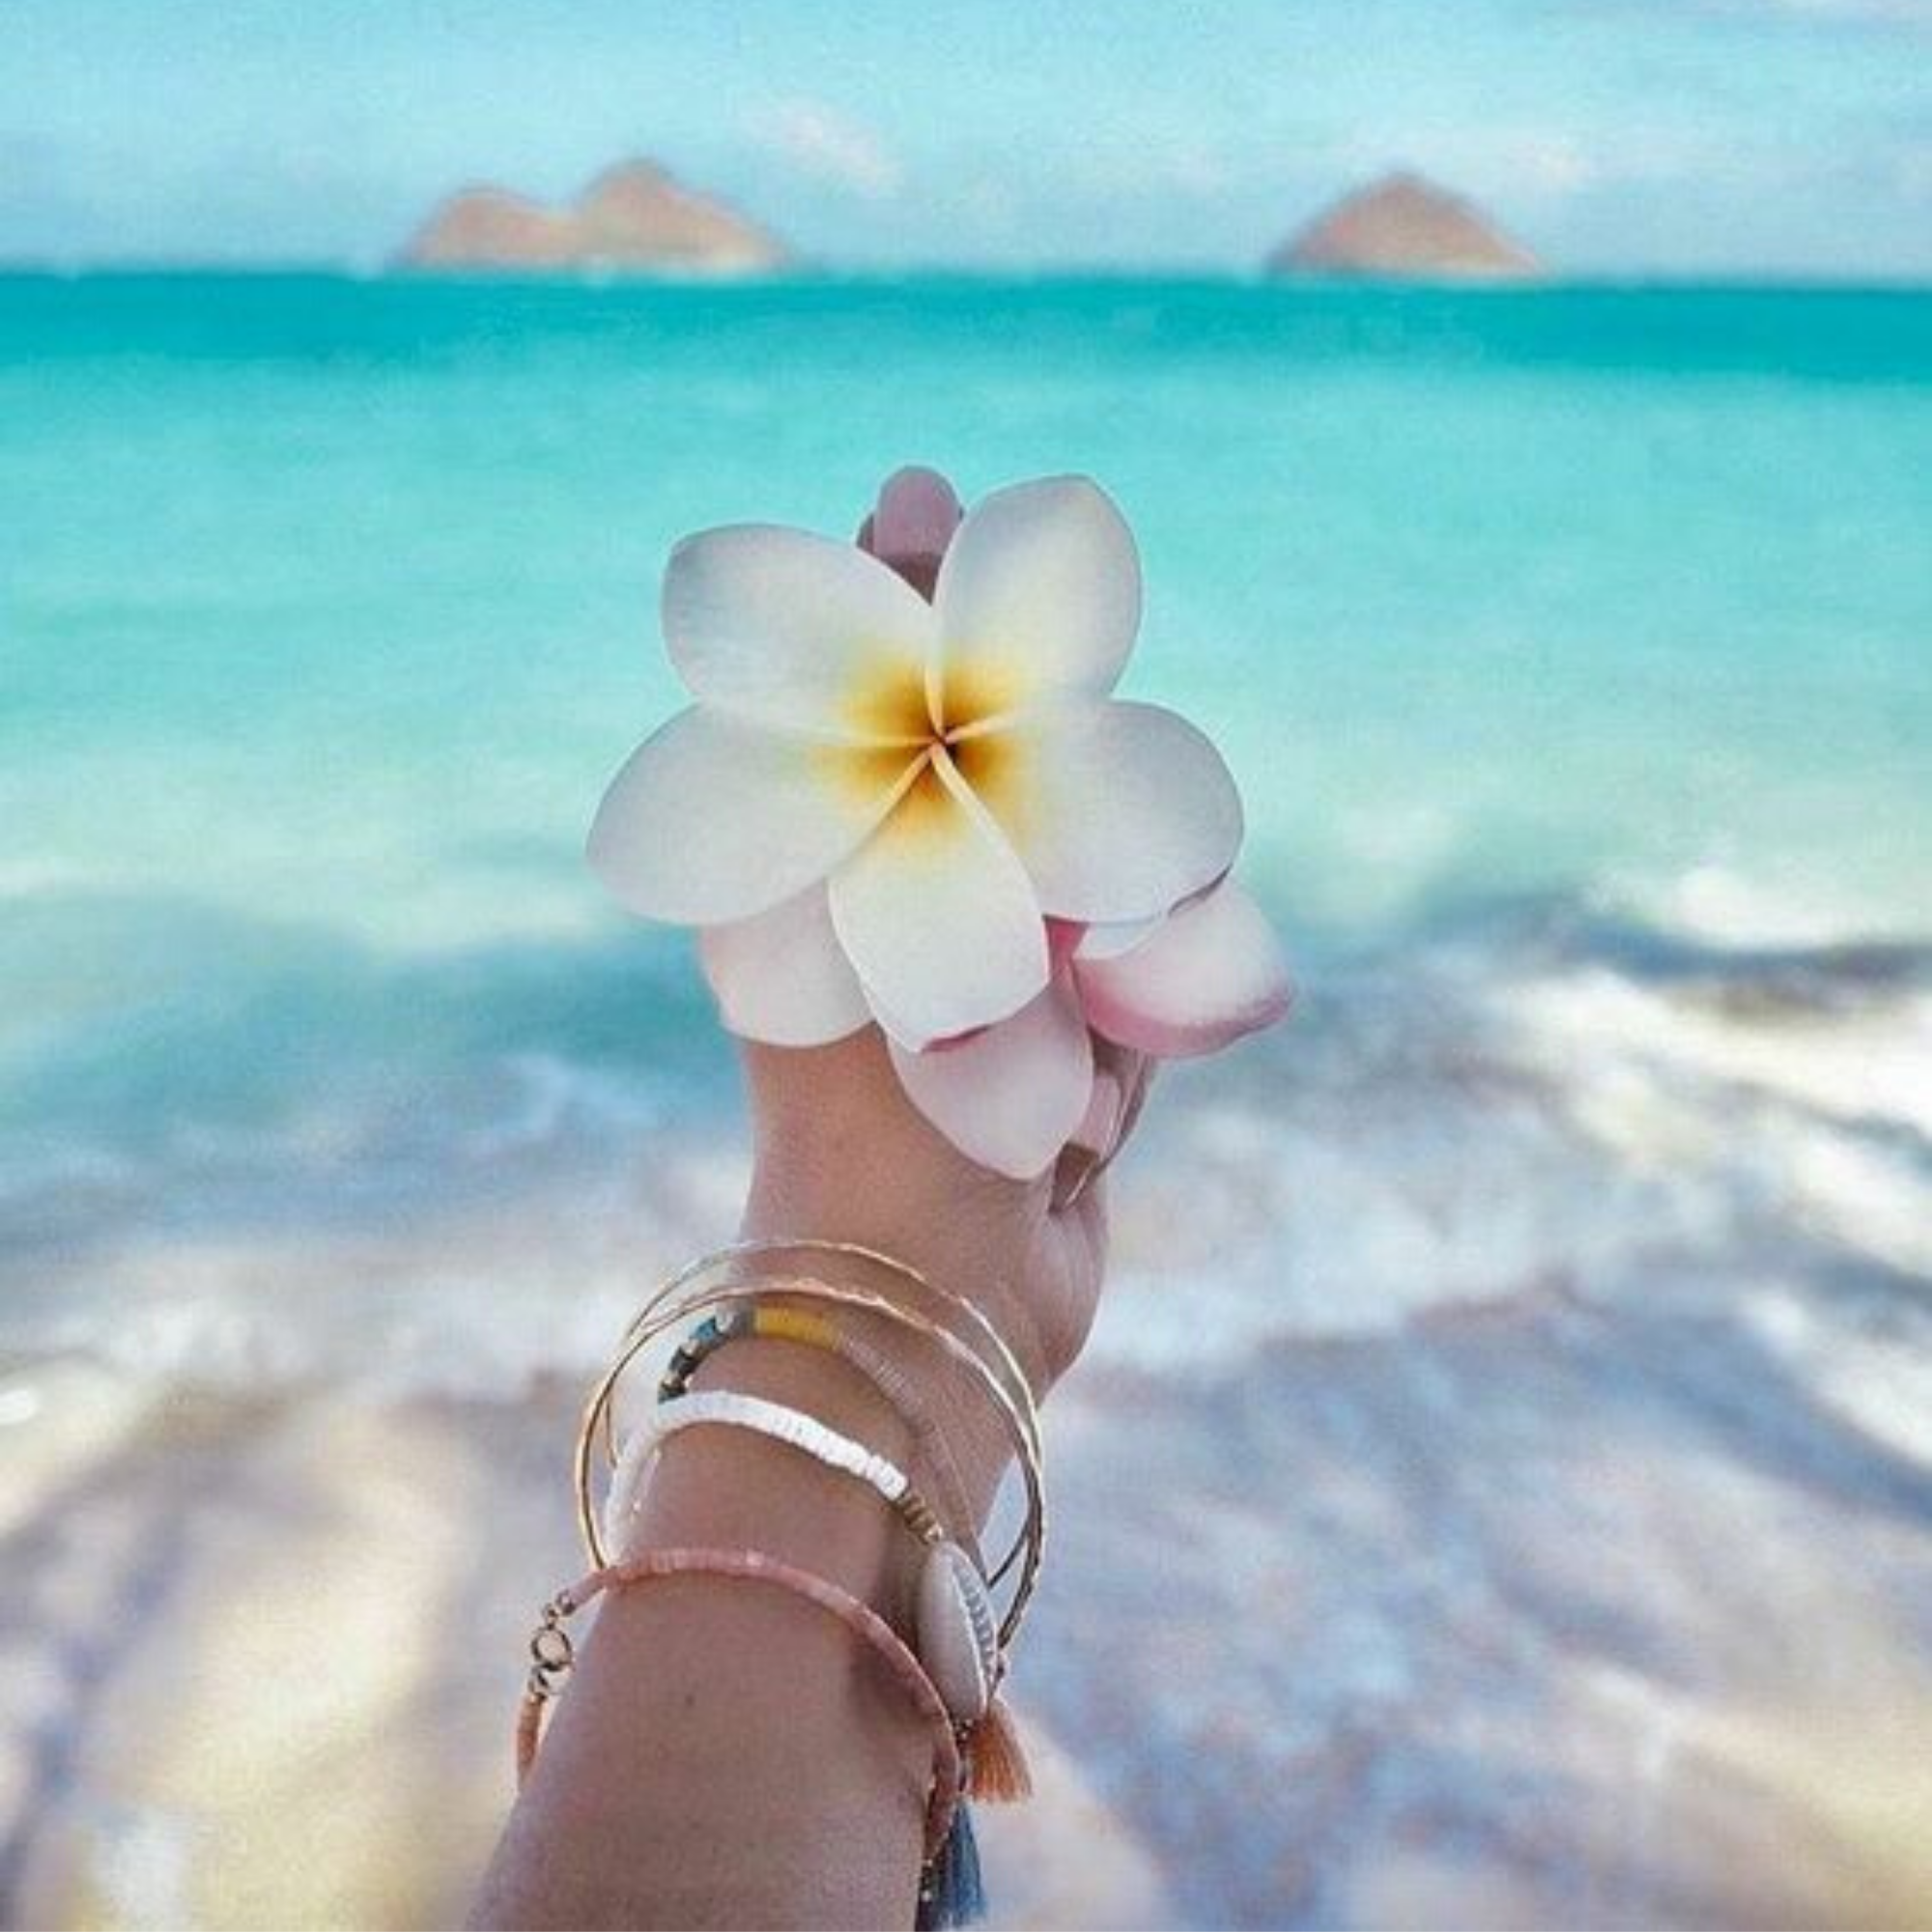 Цветы и море. Цветочек на фоне моря. Море пляж цветы. Нежные цветы и море. Вацап морской